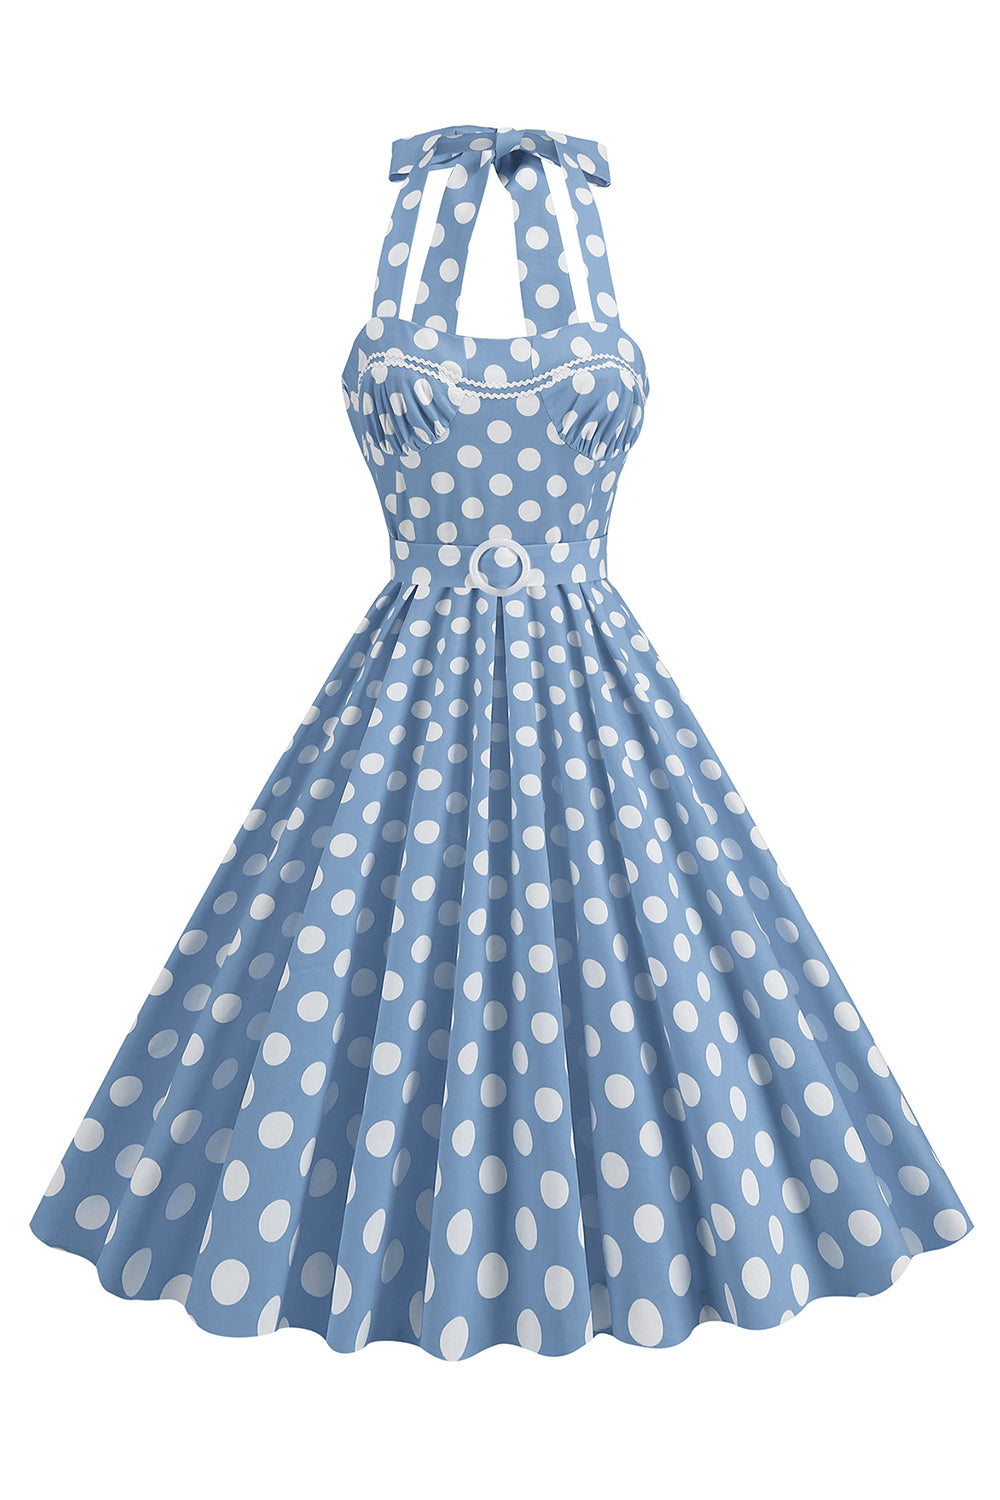 En linje blå polka prikker vintage 1950-tallskjole med belte